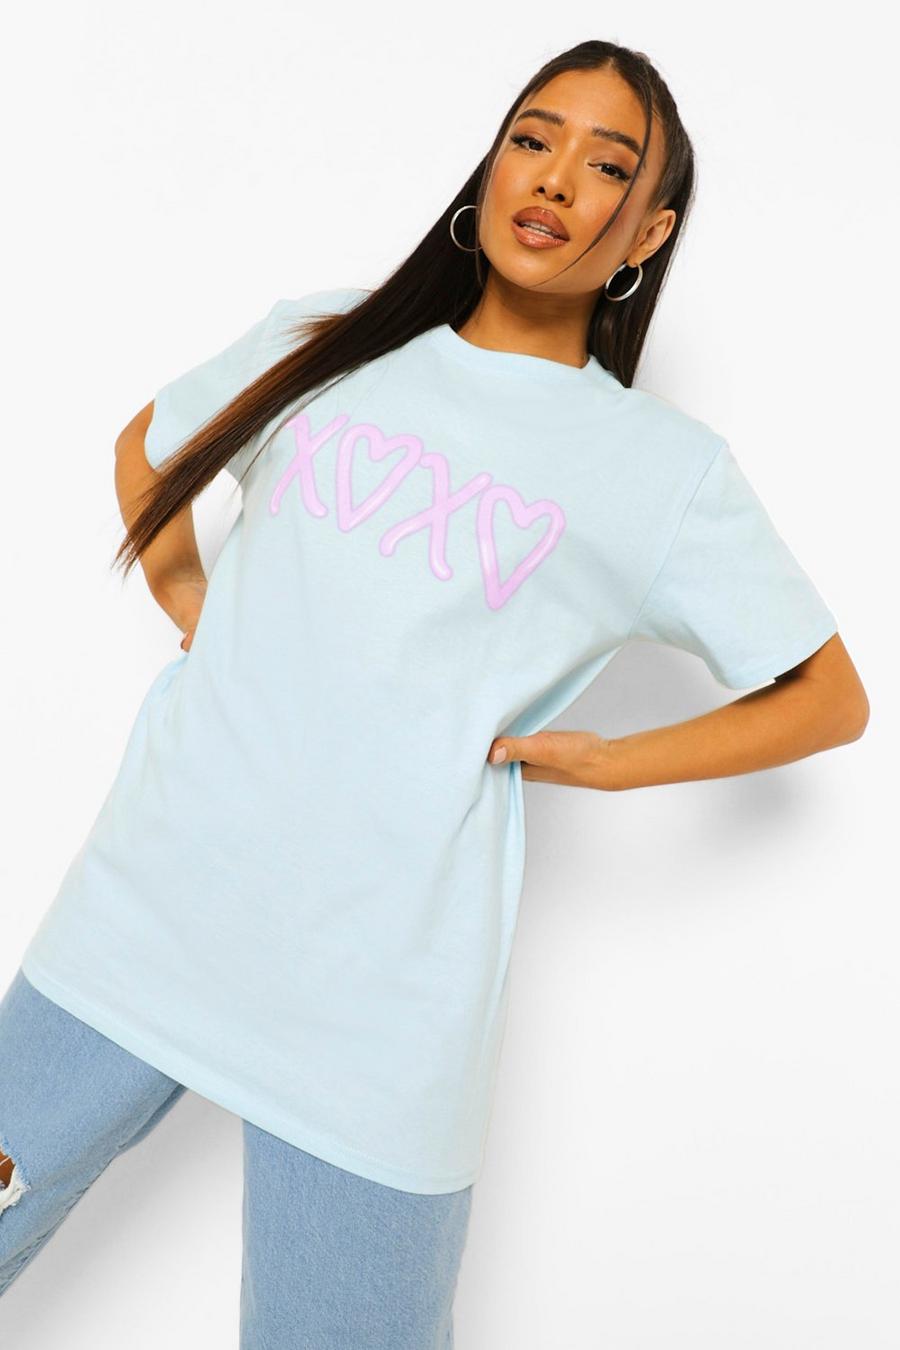 T-shirt Petite con stampa di cuori e baci in stile graffiti, Azzurro chiaro image number 1